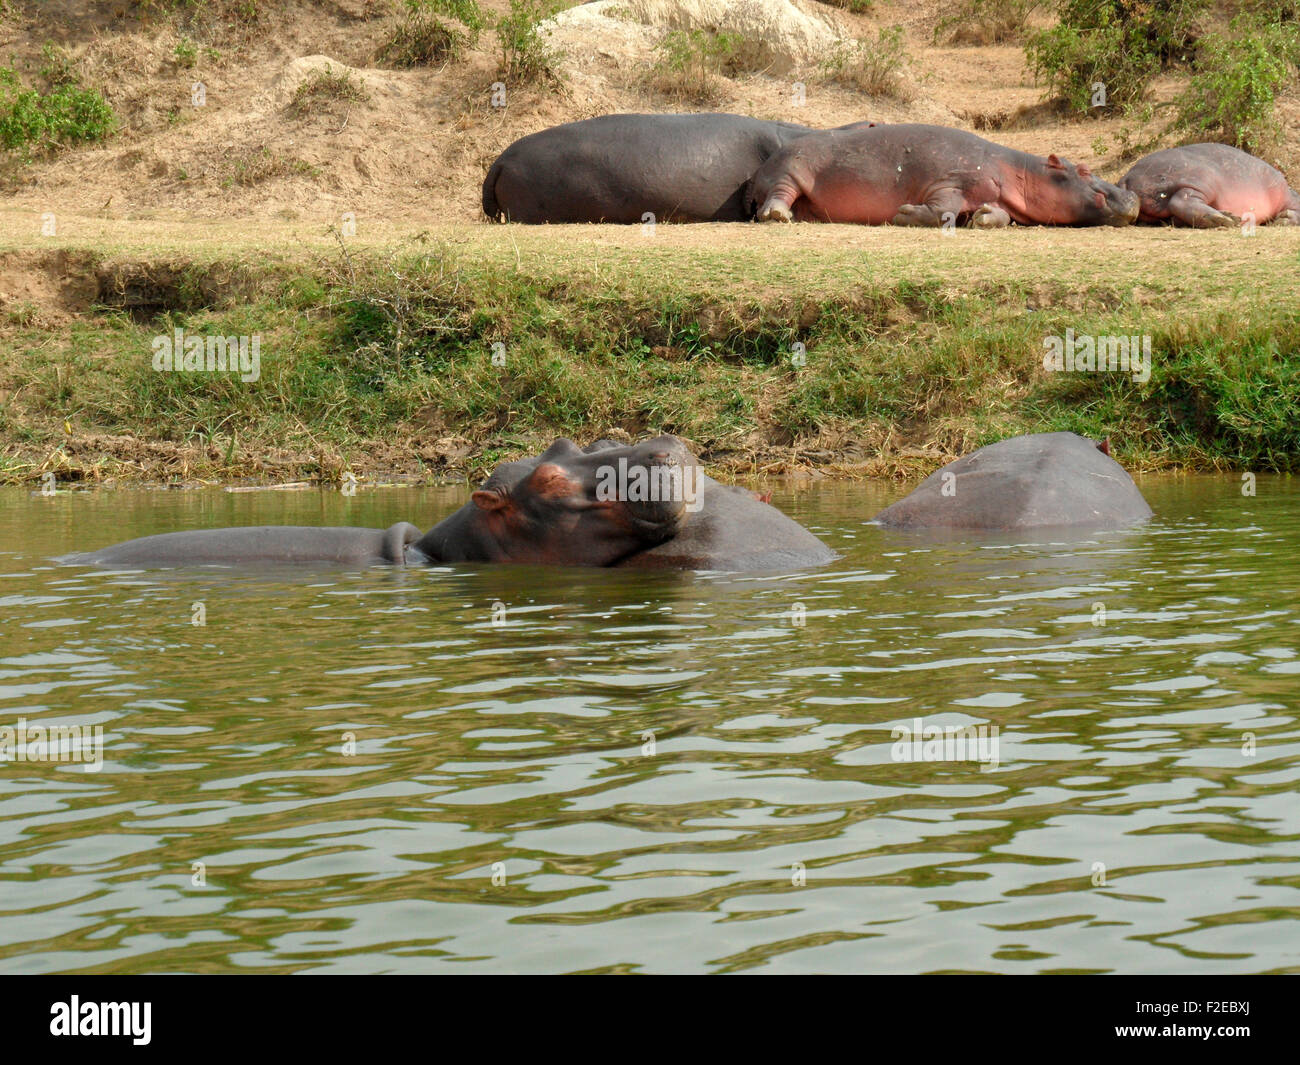 Nilpferd/ Hippo, Queen Elizabeth National Park, Uganda. Stock Photo